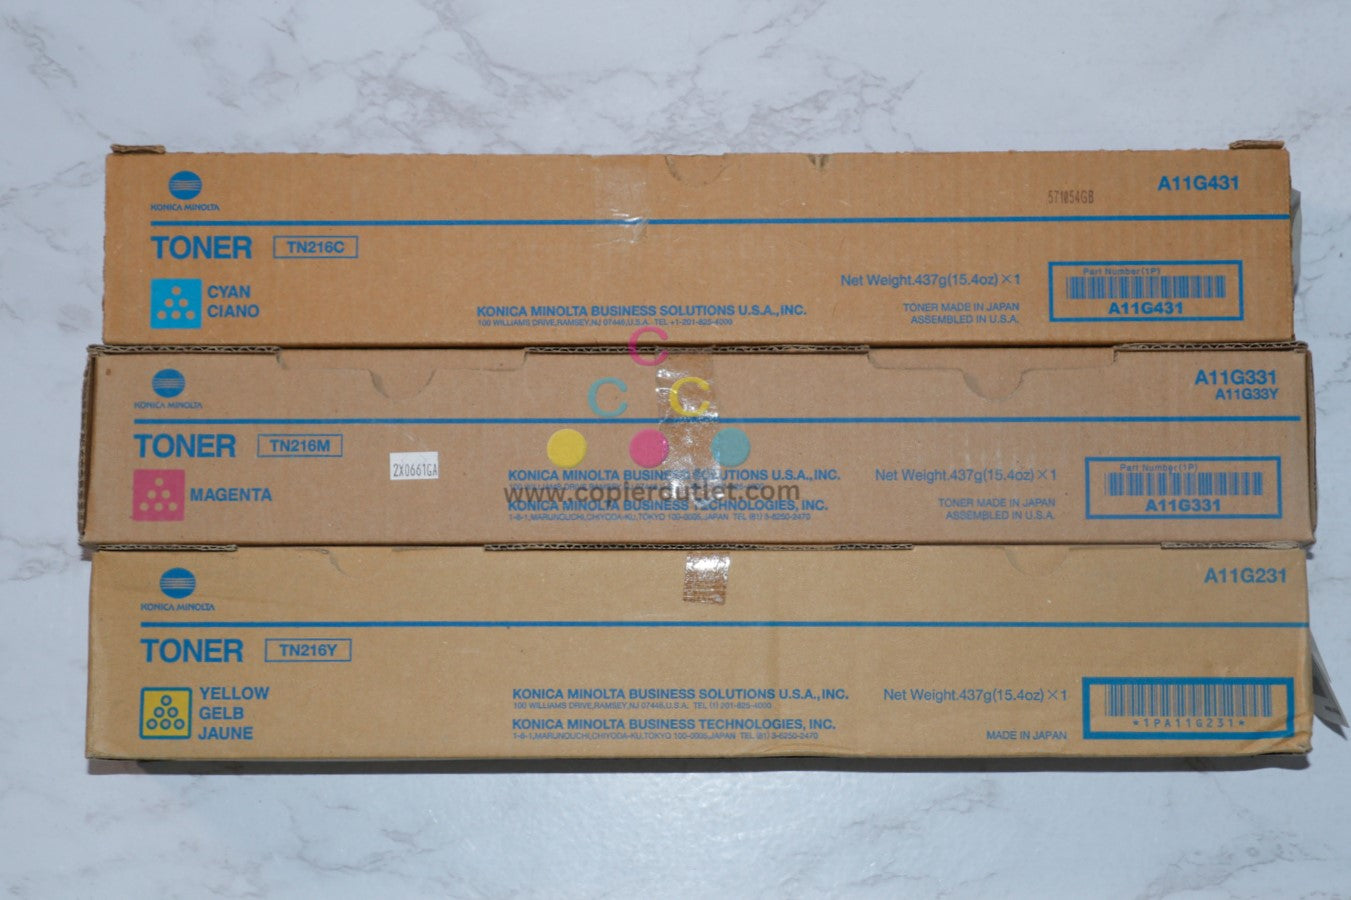 3 New OEM Konica Minolta BH C220, C280 CMY Toners TN216C, TN216M, TN216Y